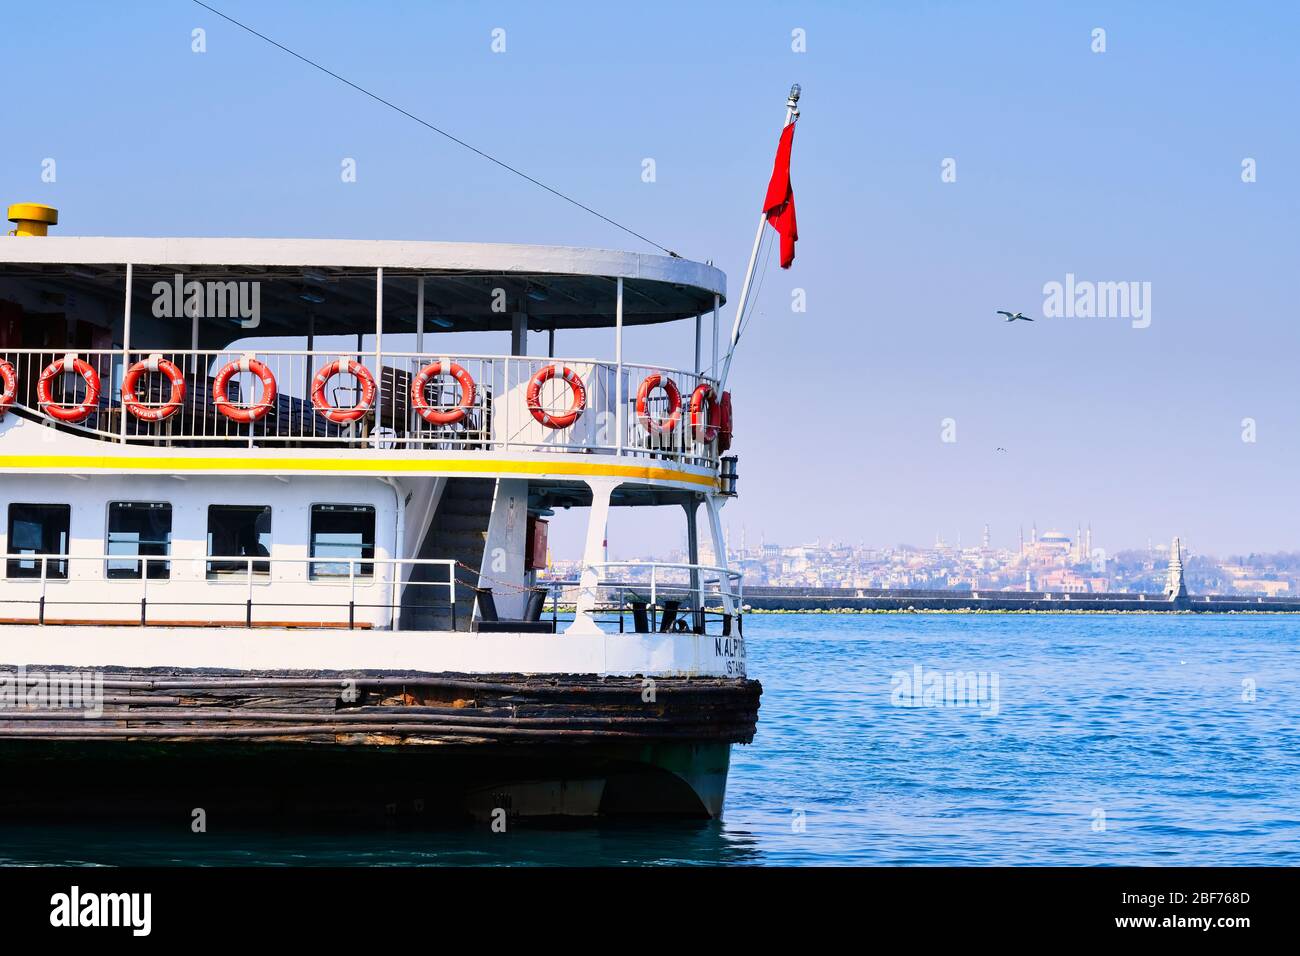 İDO Ferries que transportan pasajeros en el Estrecho de Estambul. Foto de stock